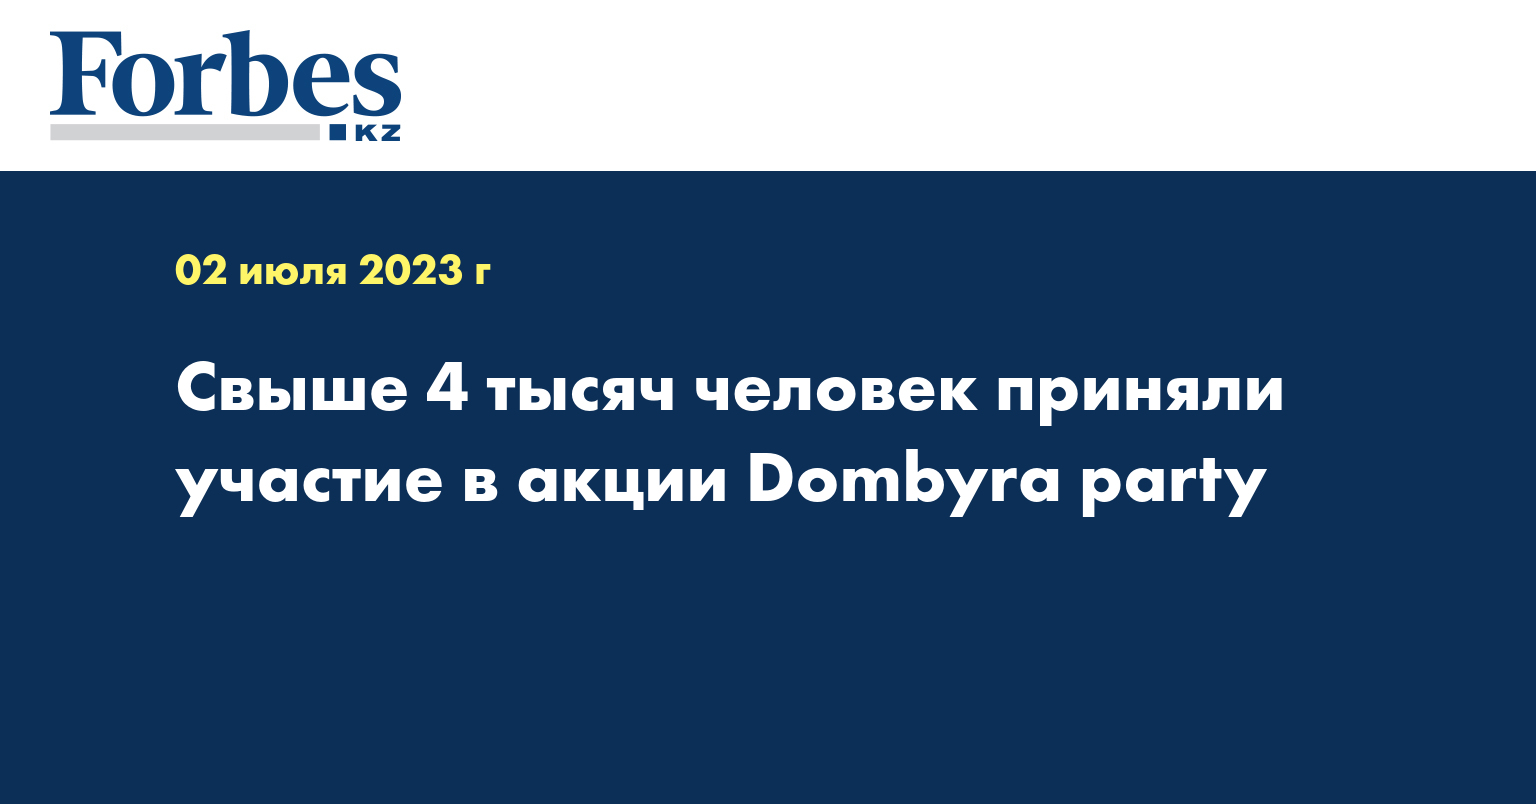 Свыше 4 тысяч человек приняли участие в акции Dombyra party